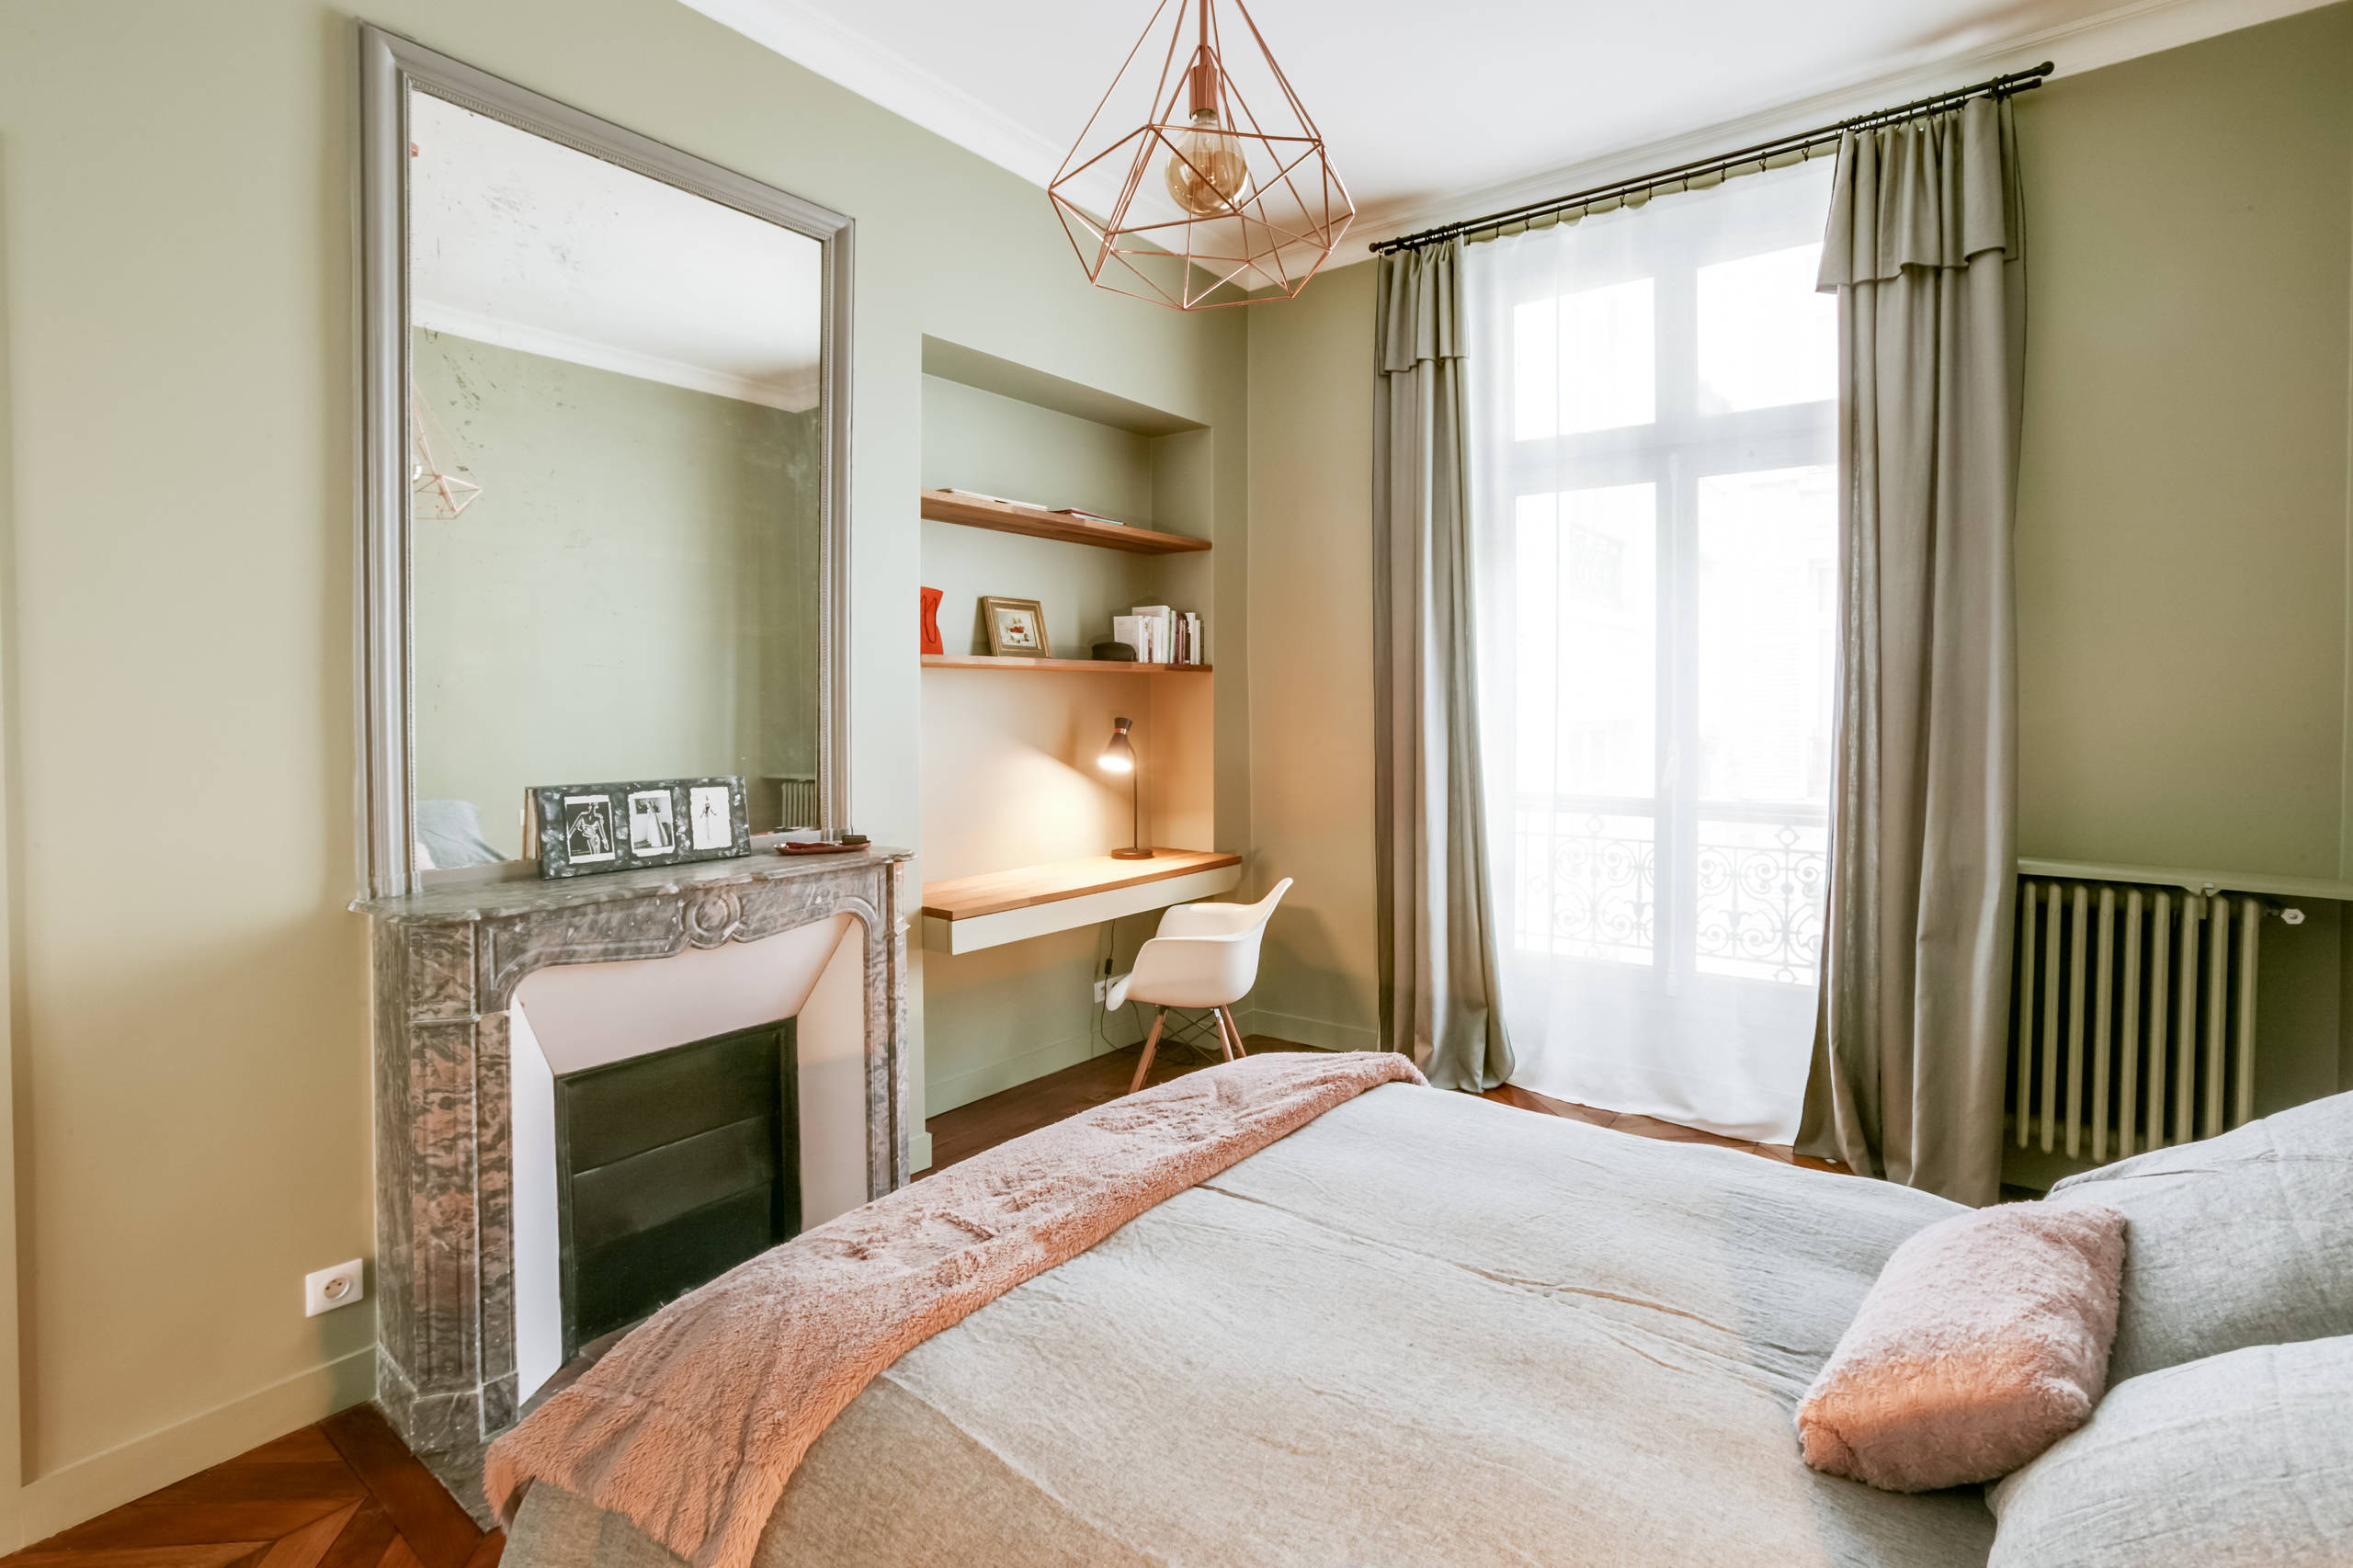 Appartement familial - Paris 8ème - 250 m2 - 2016